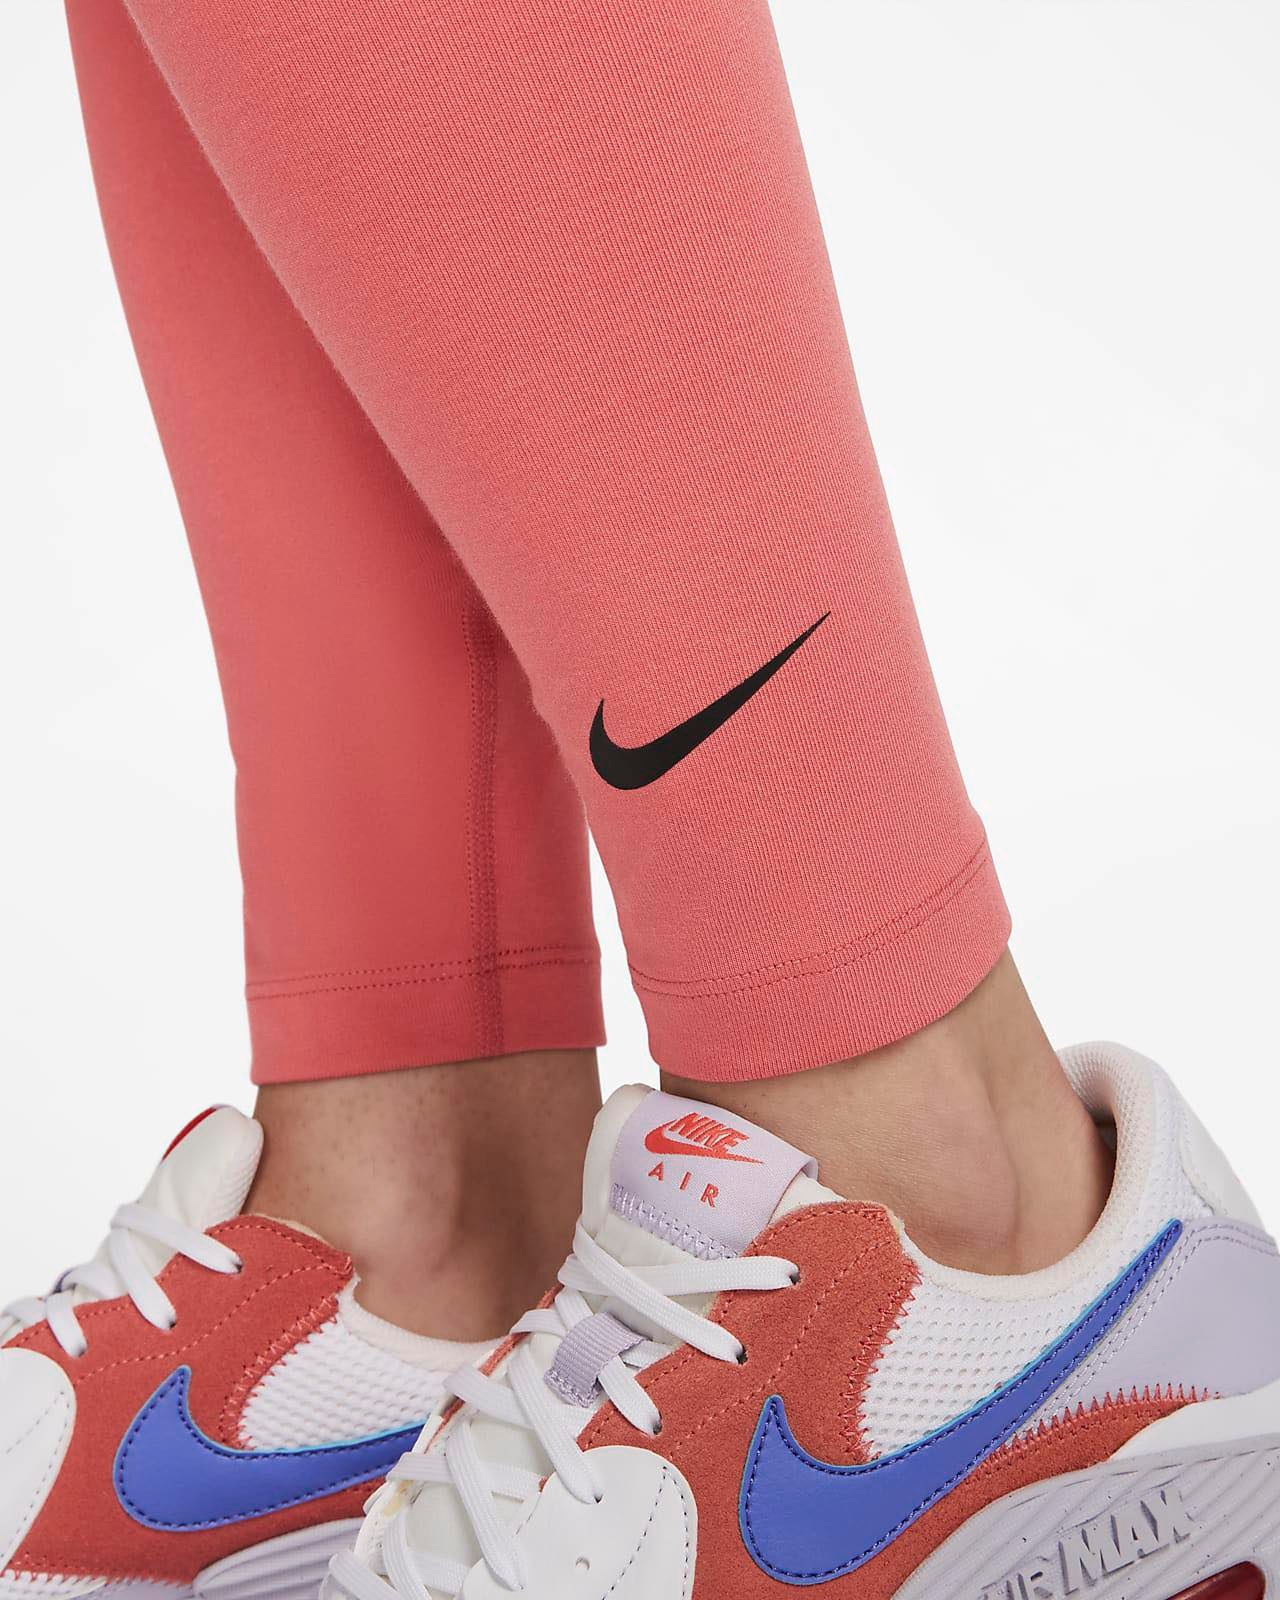 Trenniretuusid firmalt Nike*